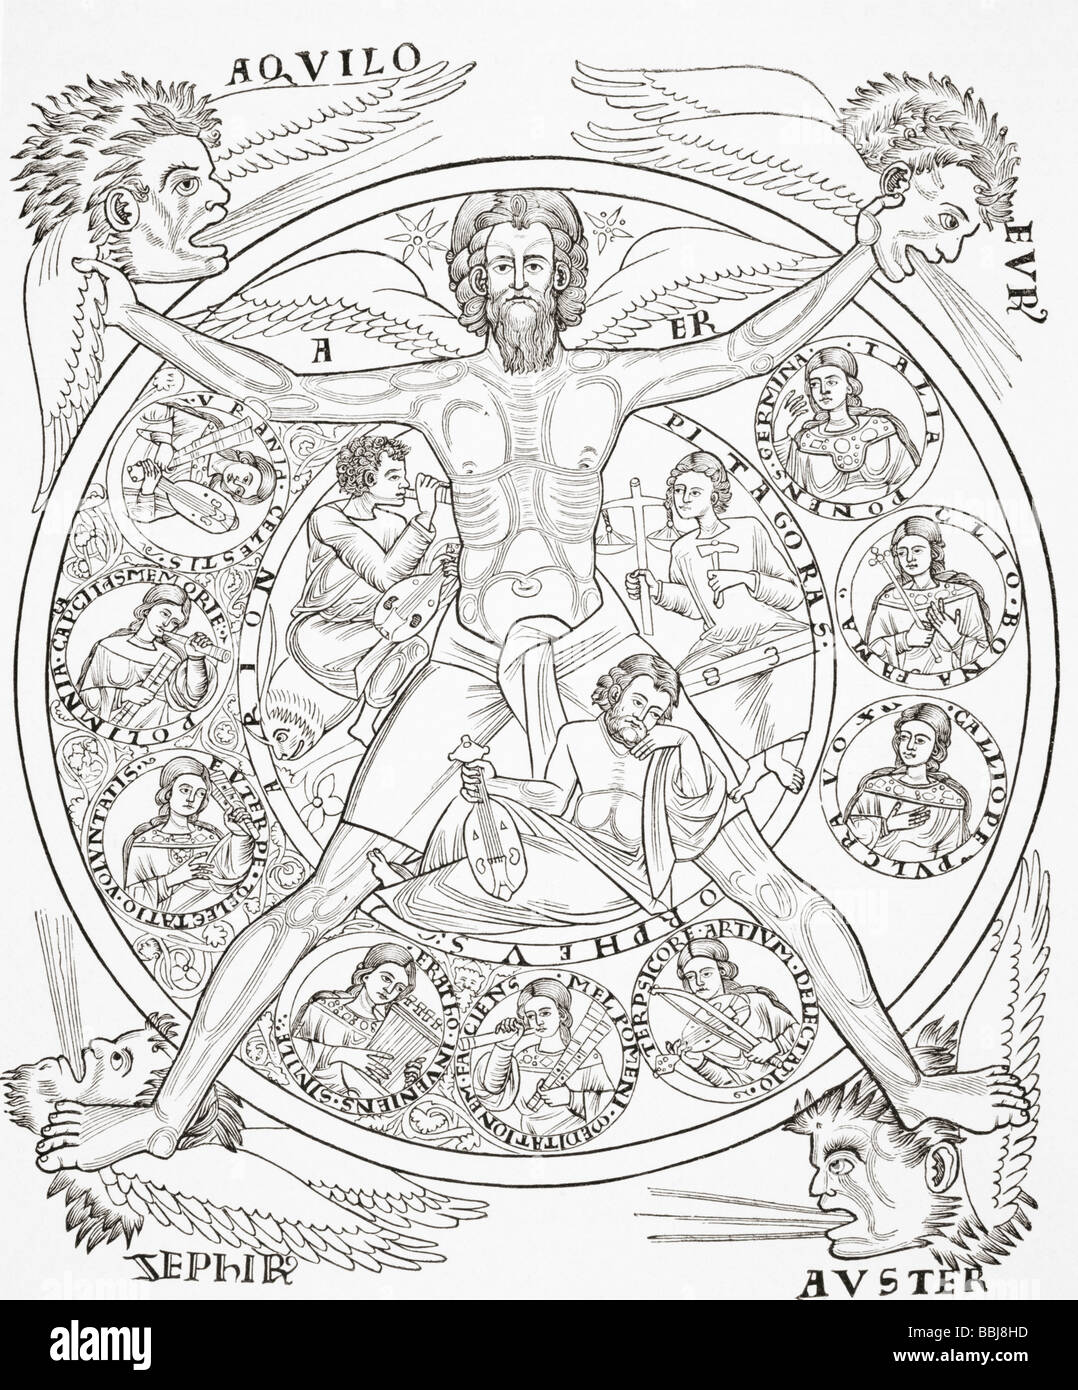 Le nove Muse ispirano Arione, Orfeo e Pitagora sotto gli auspici dell'aria personificata, fonte di ogni armonia. Foto Stock